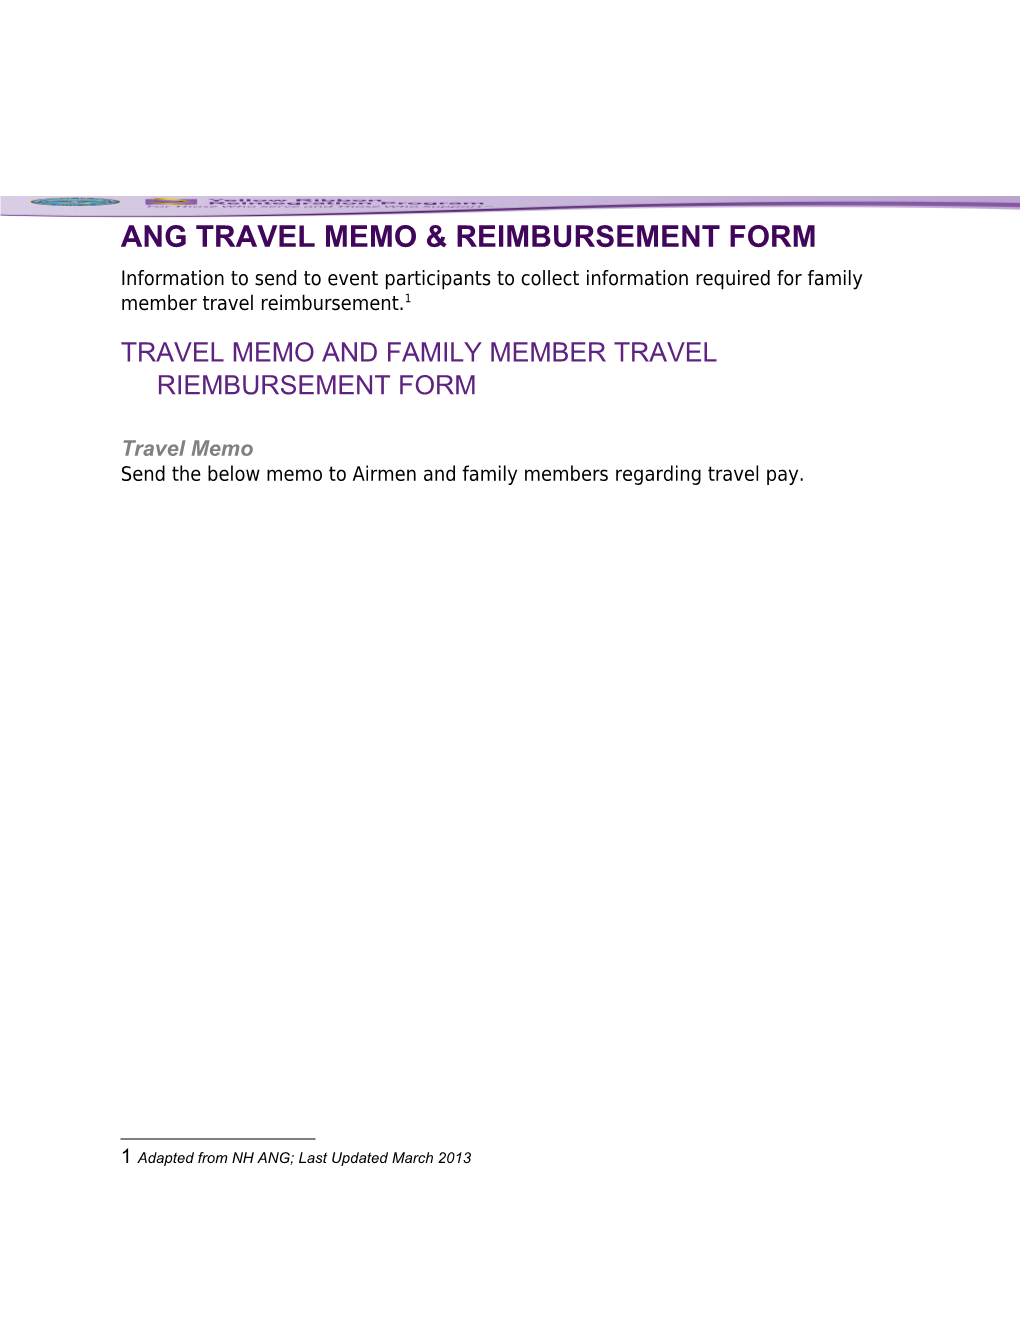 ANG Travel Memo & Reimbursement Form